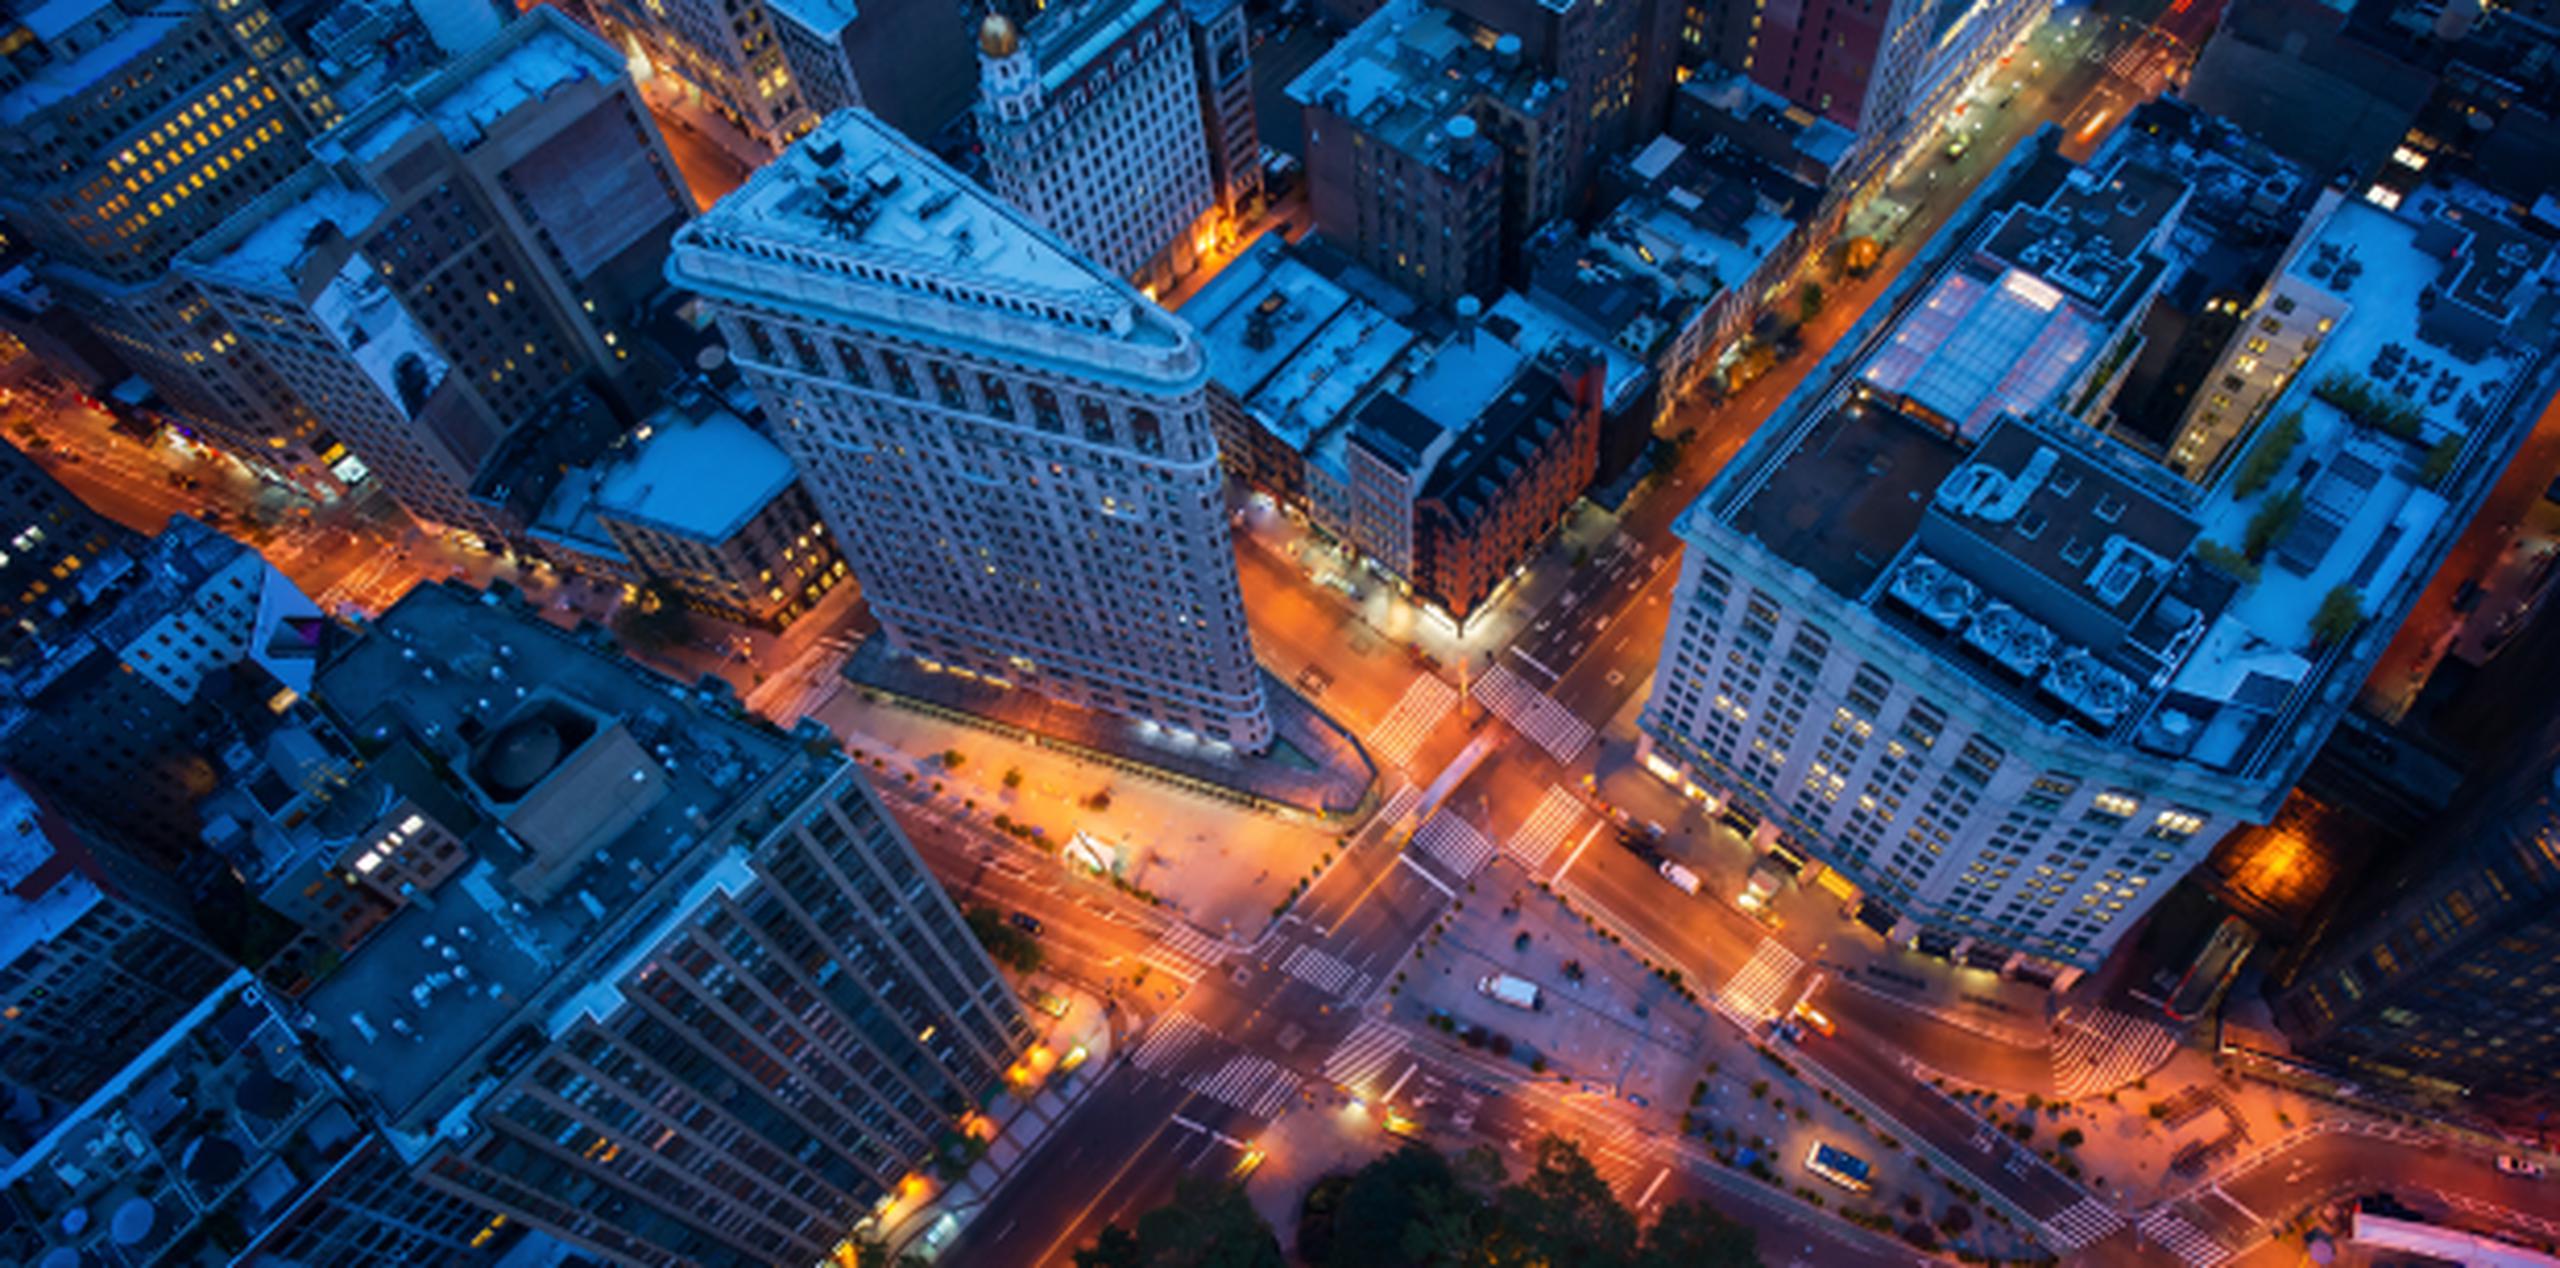 Vista aérea de Manhattan. (Shutterstock)